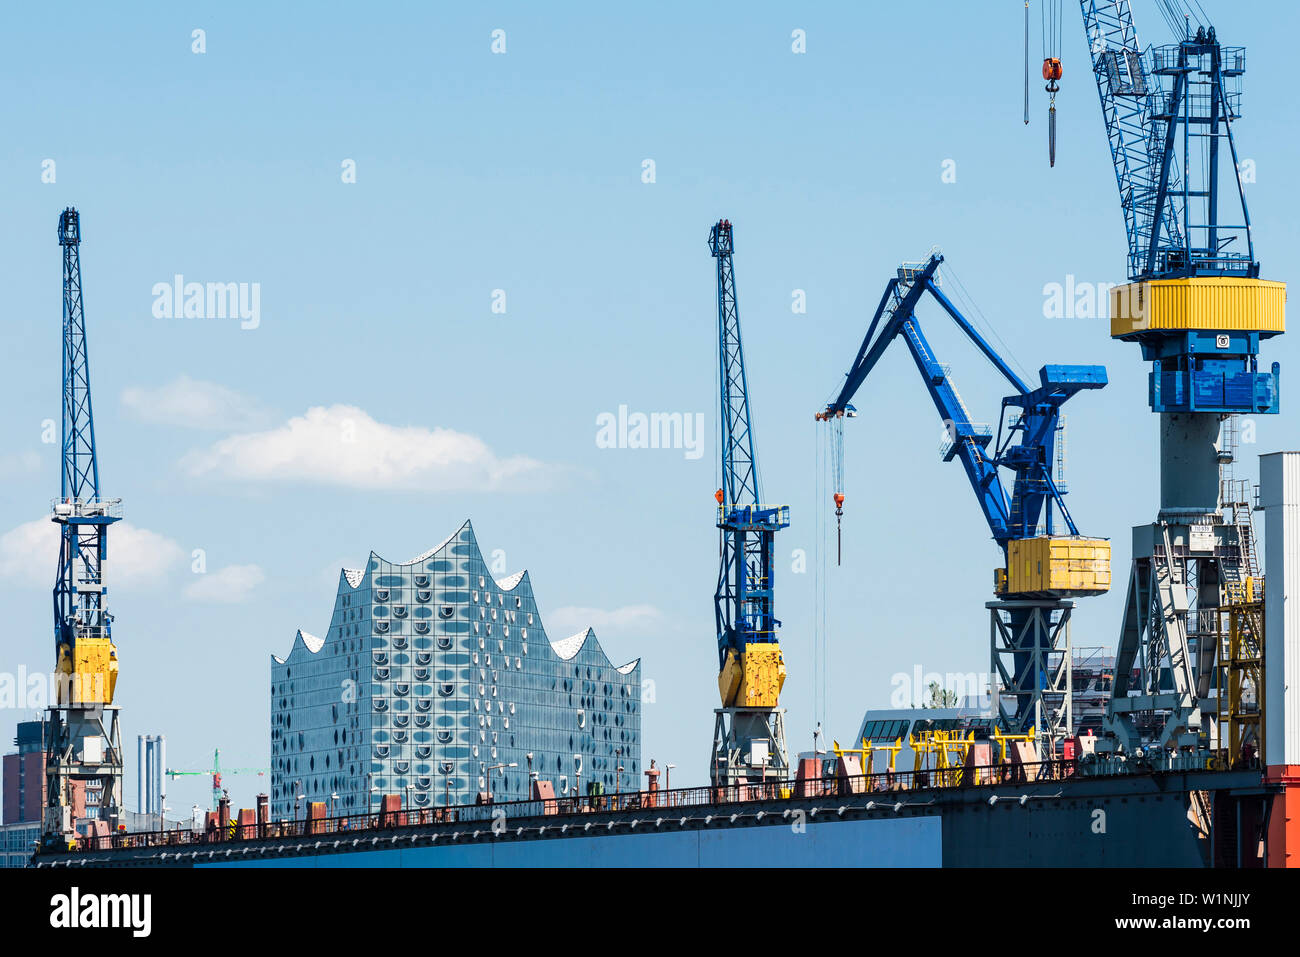 Die konzerthalle Elbphilharmonie durch Kräne der Werft Blohm und Voss, Hamburg, Deutschland gerahmt Stockfoto